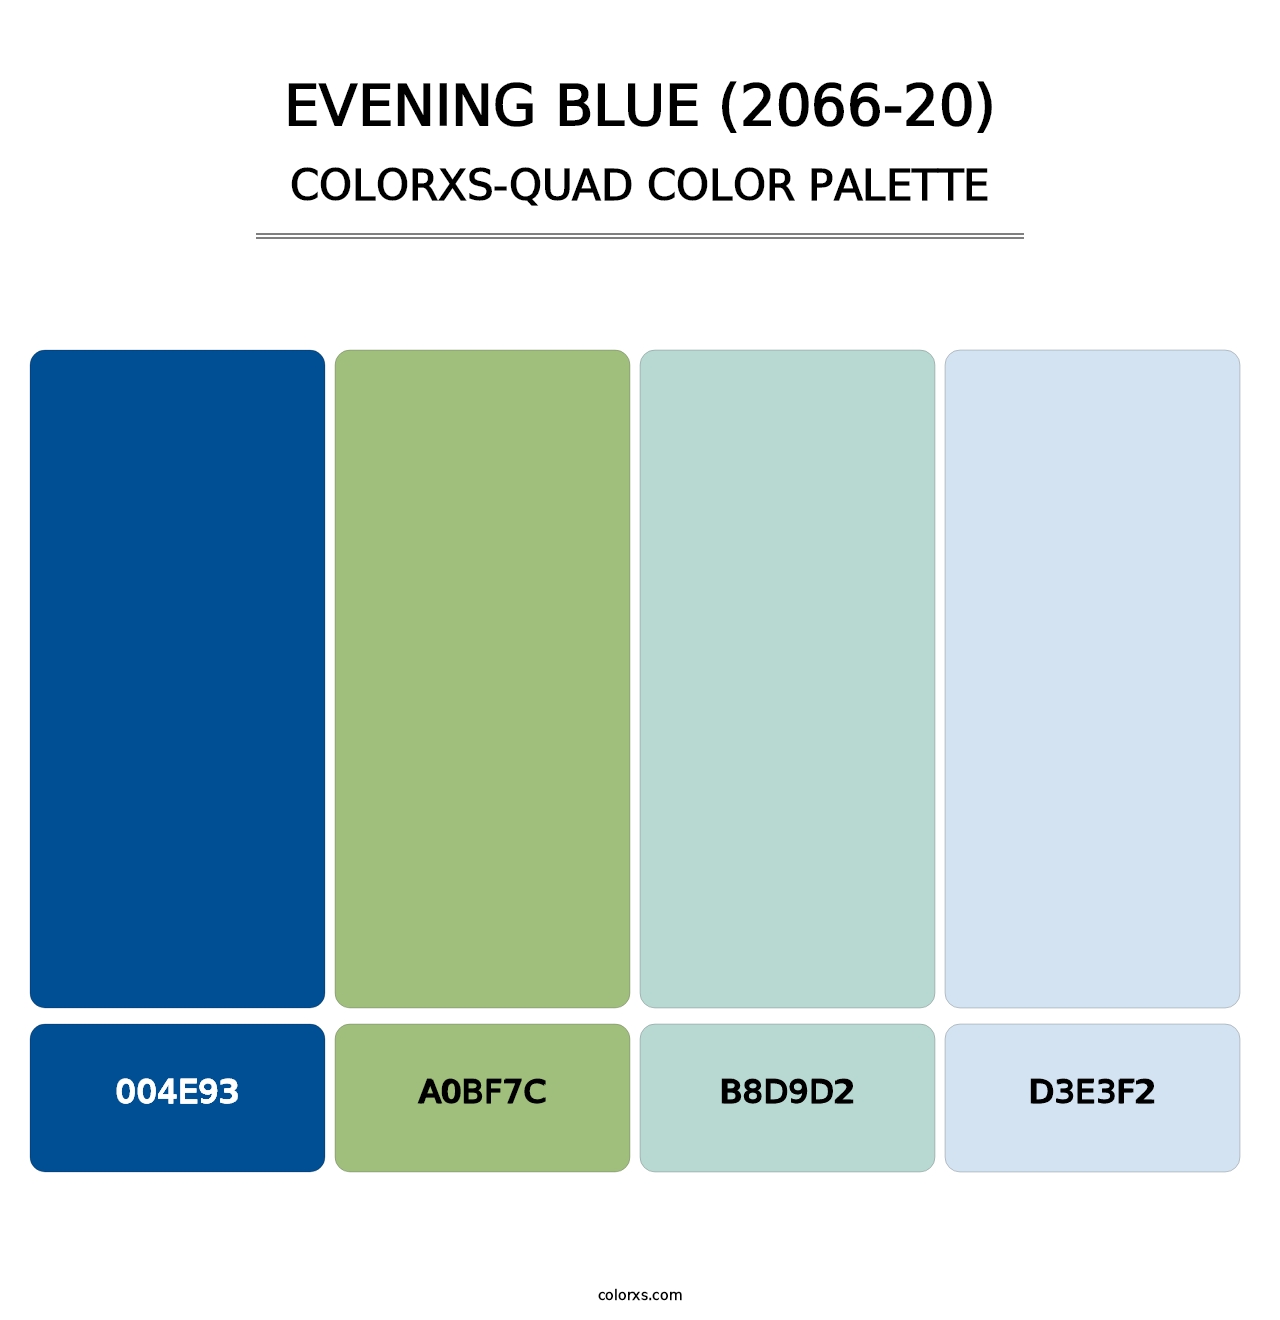 Evening Blue (2066-20) - Colorxs Quad Palette